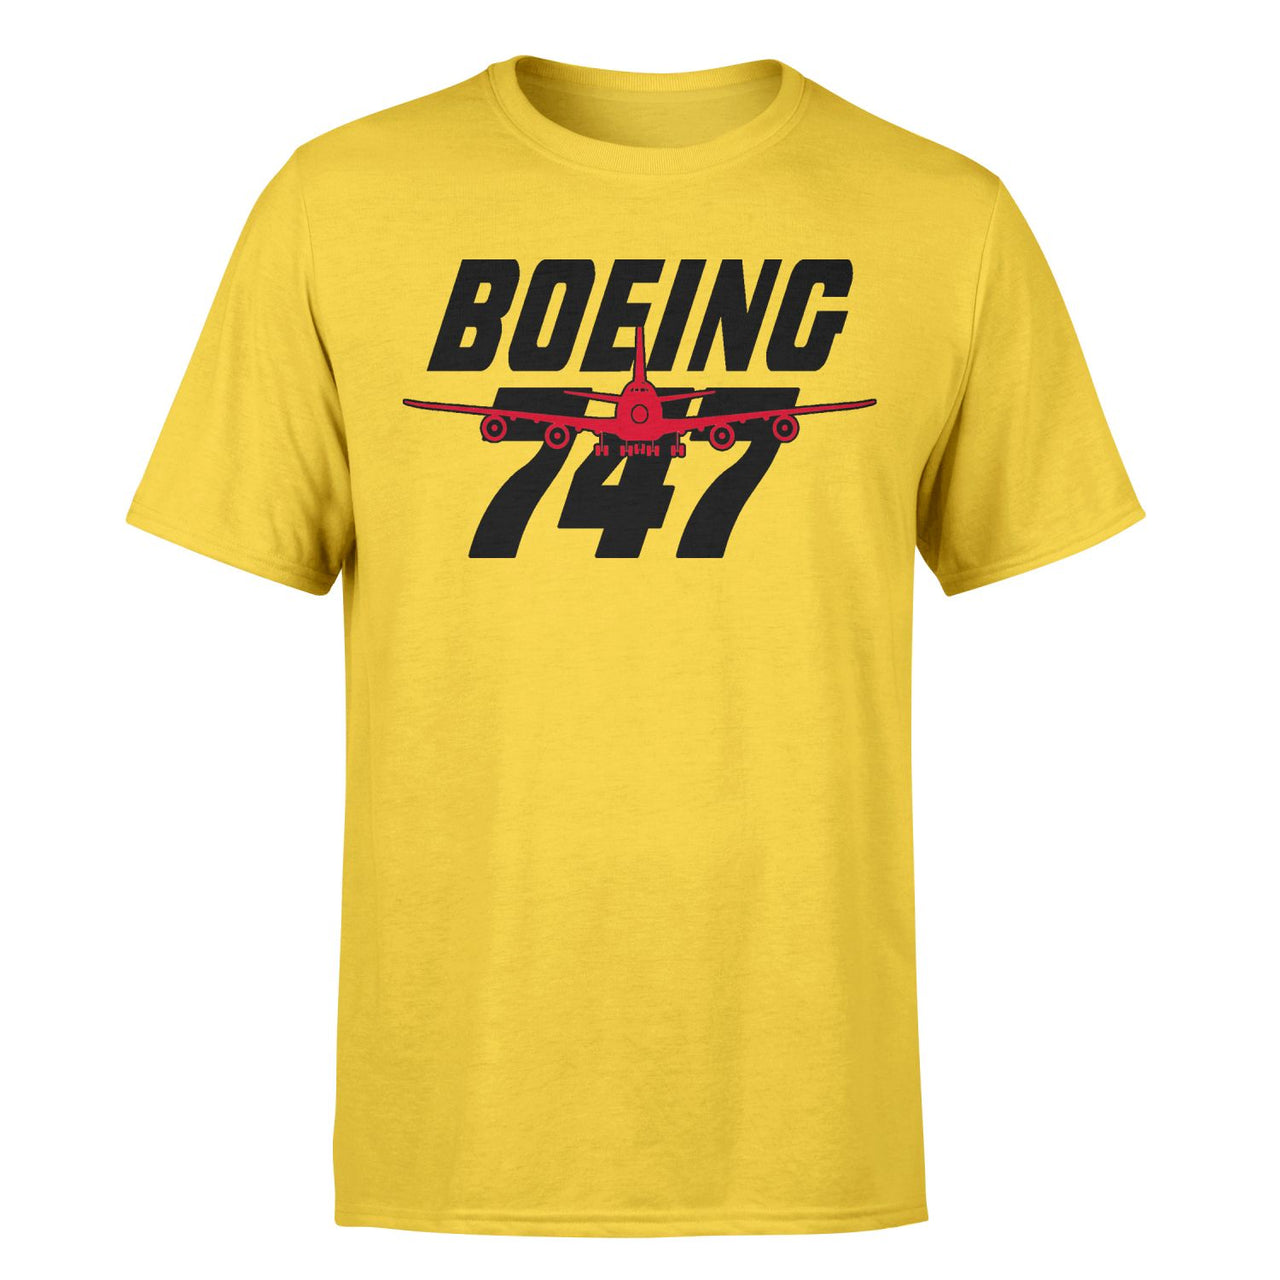 Amazing Boeing 747 Designed T-Shirts